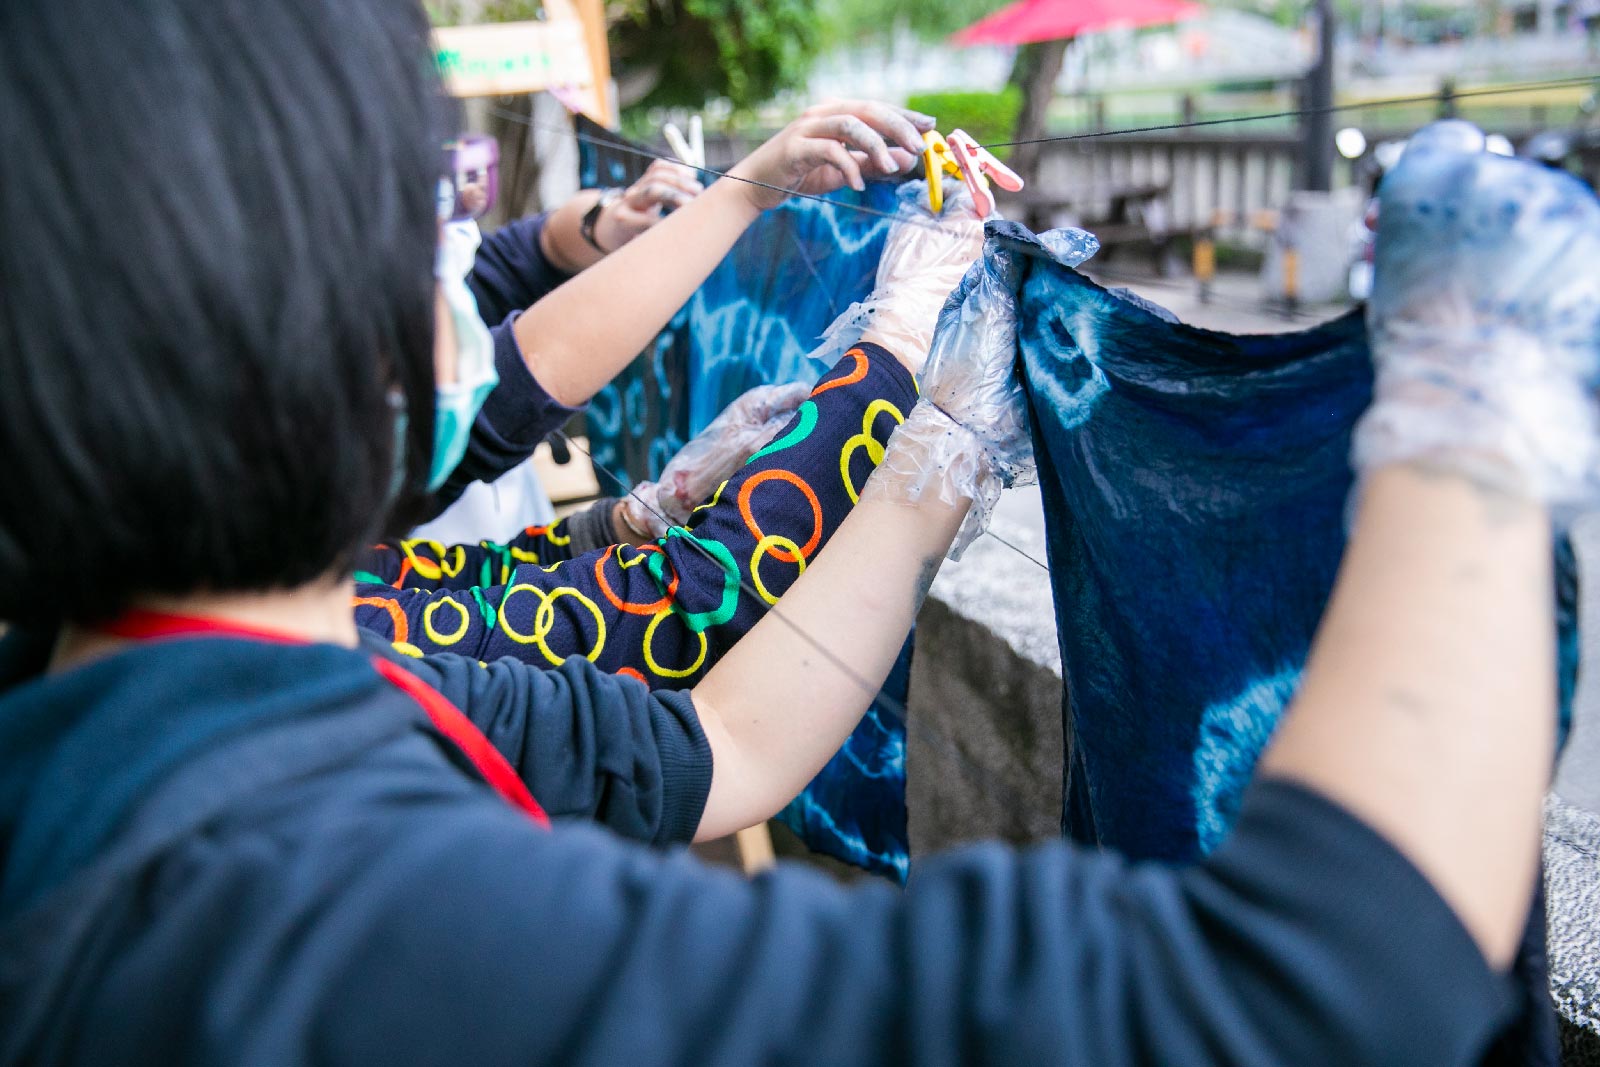 三峽藍染曾是台灣北部的染布重地，經時光不斷演變，使傳統文化不斷流逝，希望能透過旅行的方式，讓傳統產業能再度重回過往的記憶，旅人們透過手做的溫度，創造屬於自己旅行的紀念品，更能延續傳統職人的技藝。- 藍染體驗DIY -  | 甘樂文創 | 甘之如飴，樂在其中